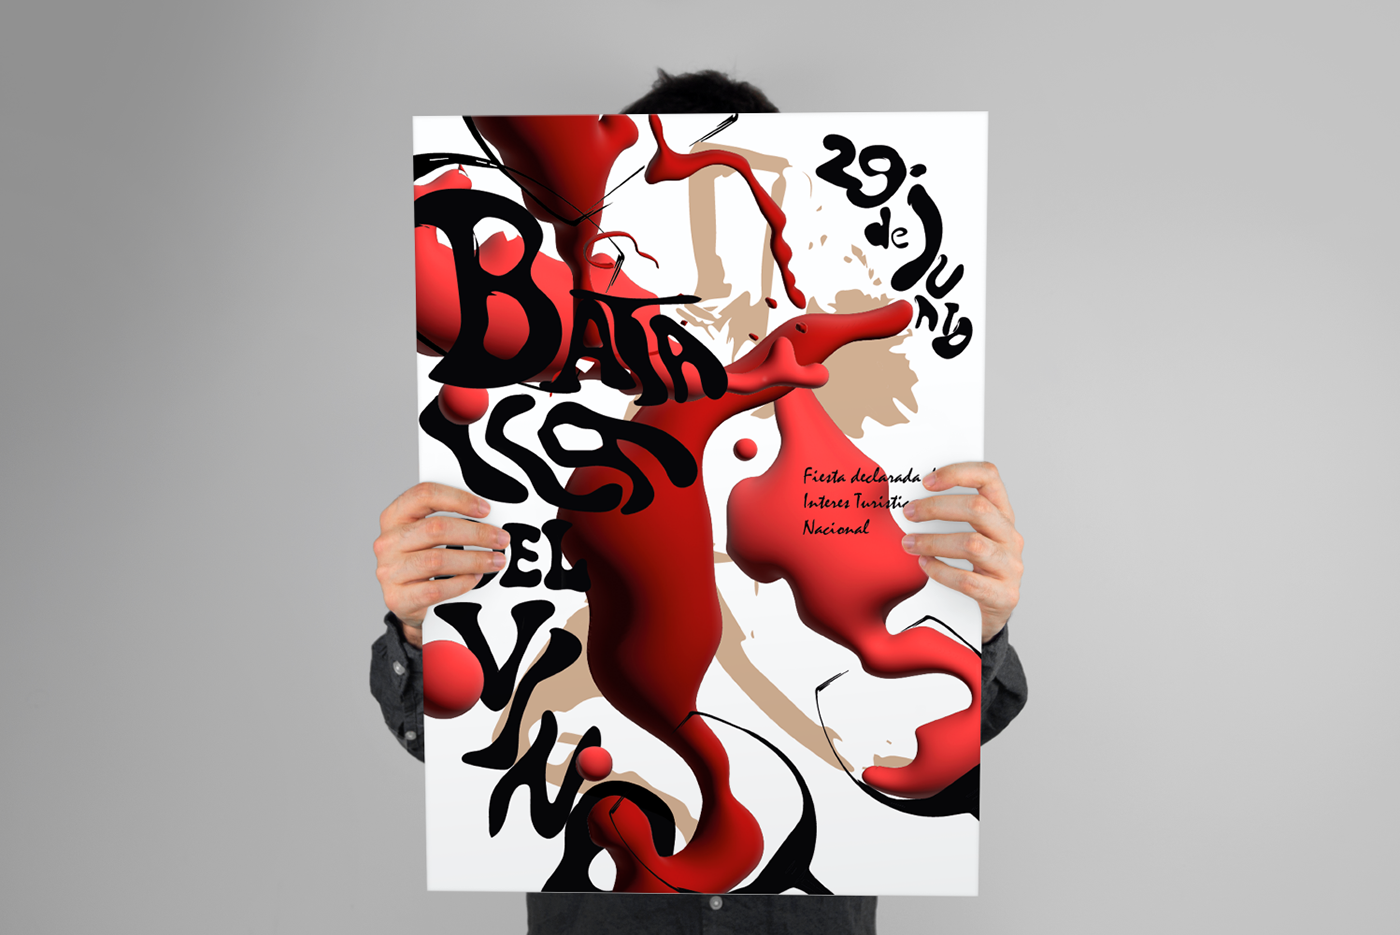 типографика Типография графический дизайн иллюстрация Постеры дизайн Иллюстратор adobe illustrator моккап